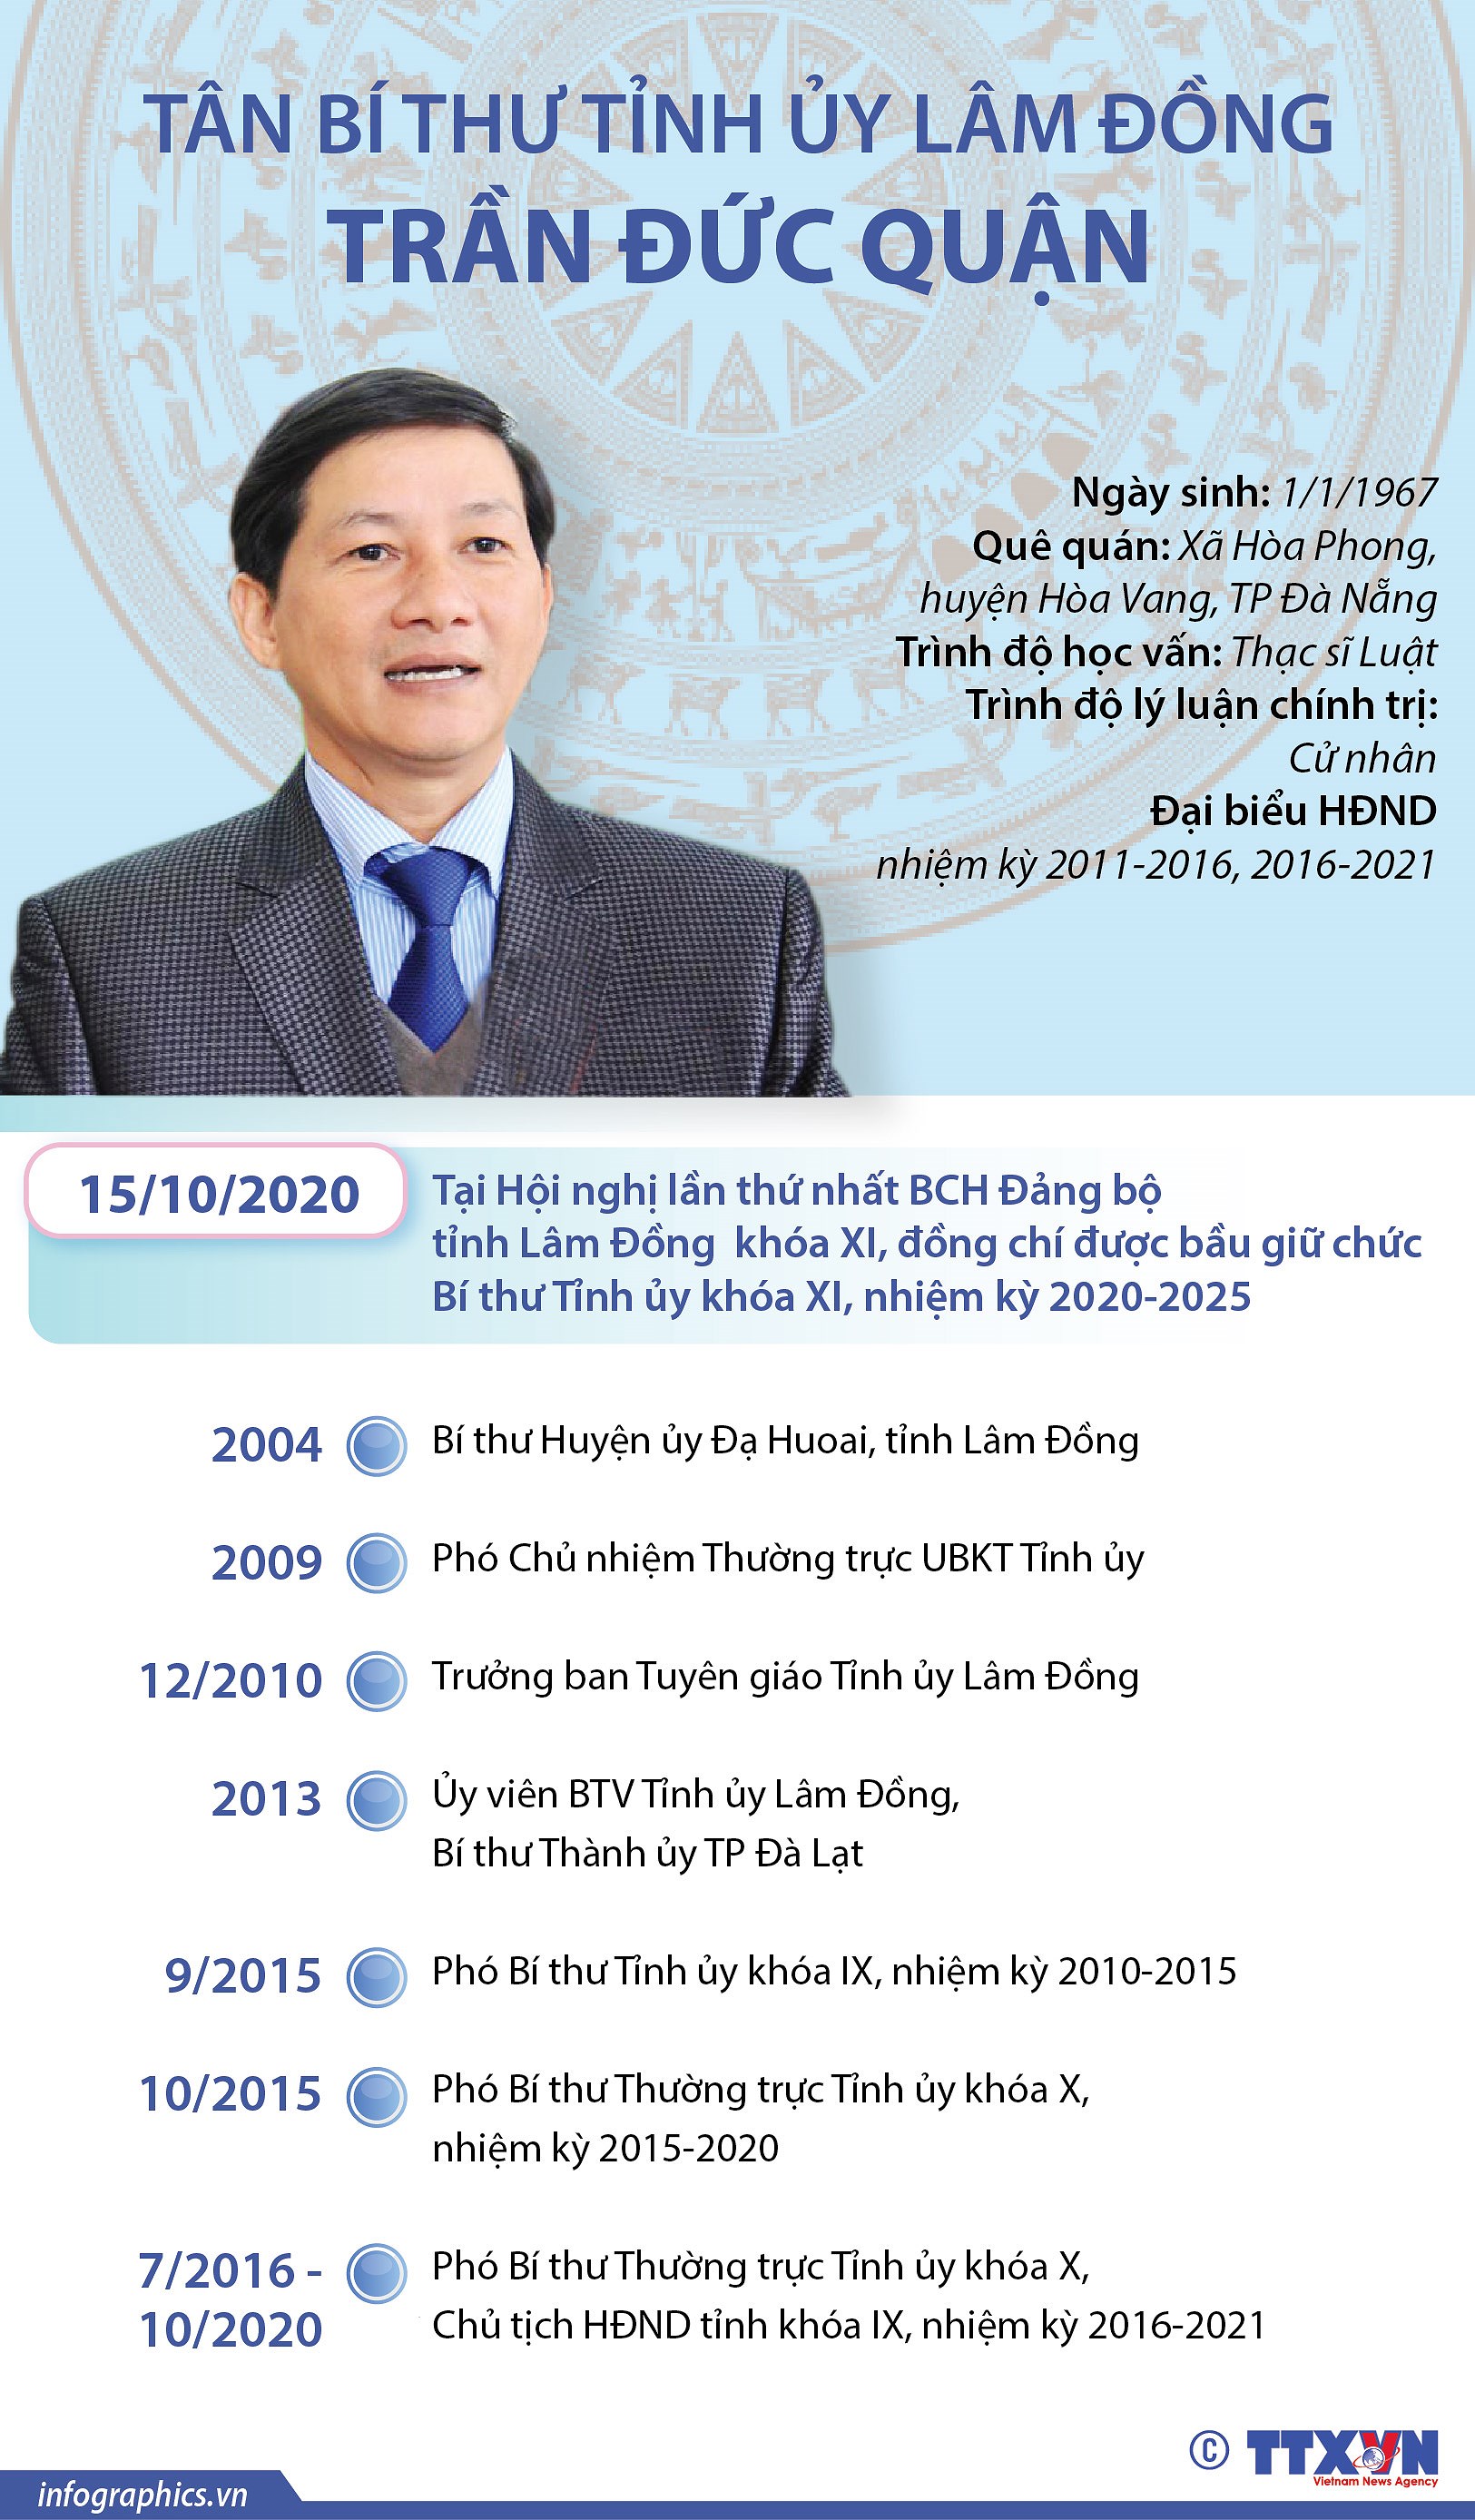 [Infographics] Tan Bi thu Tinh uy Lam Dong Tran Duc Quan hinh anh 1